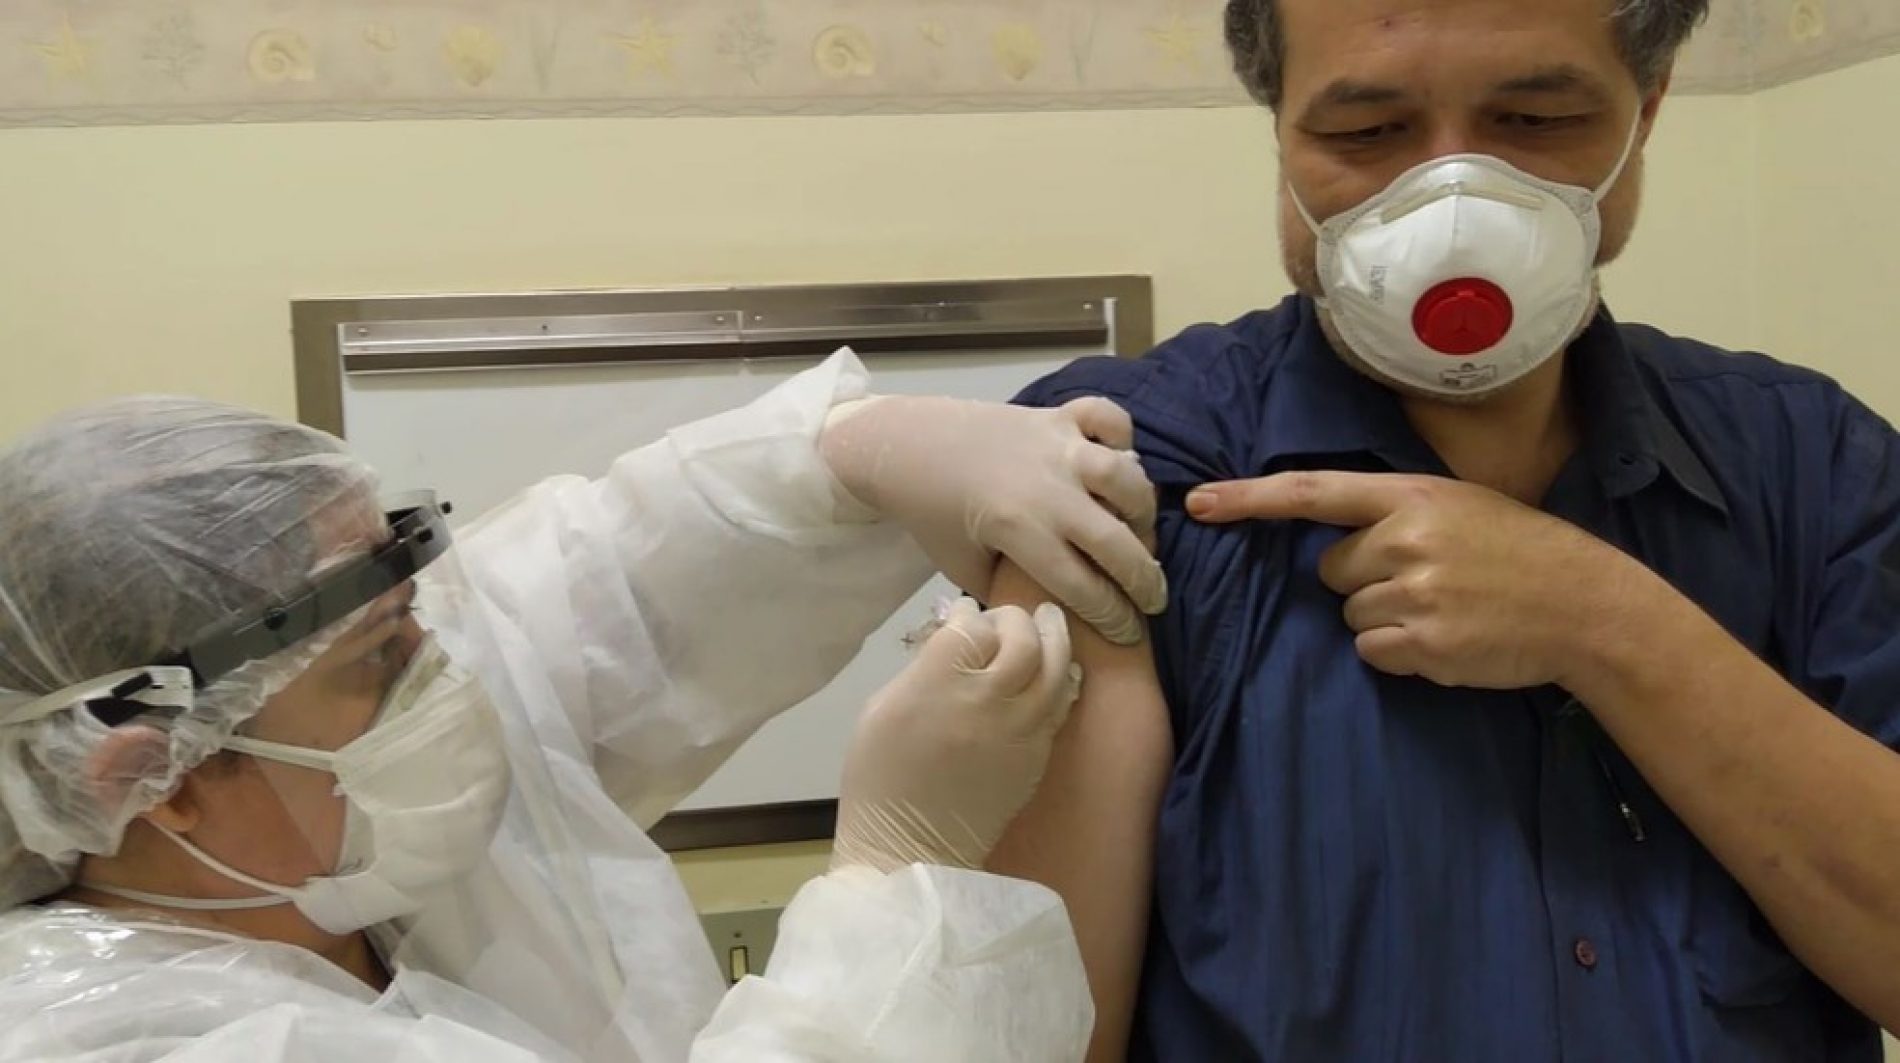 REGIÃO: Voluntários que tomaram dose da vacina chinesa passam bem, diz pesquisador